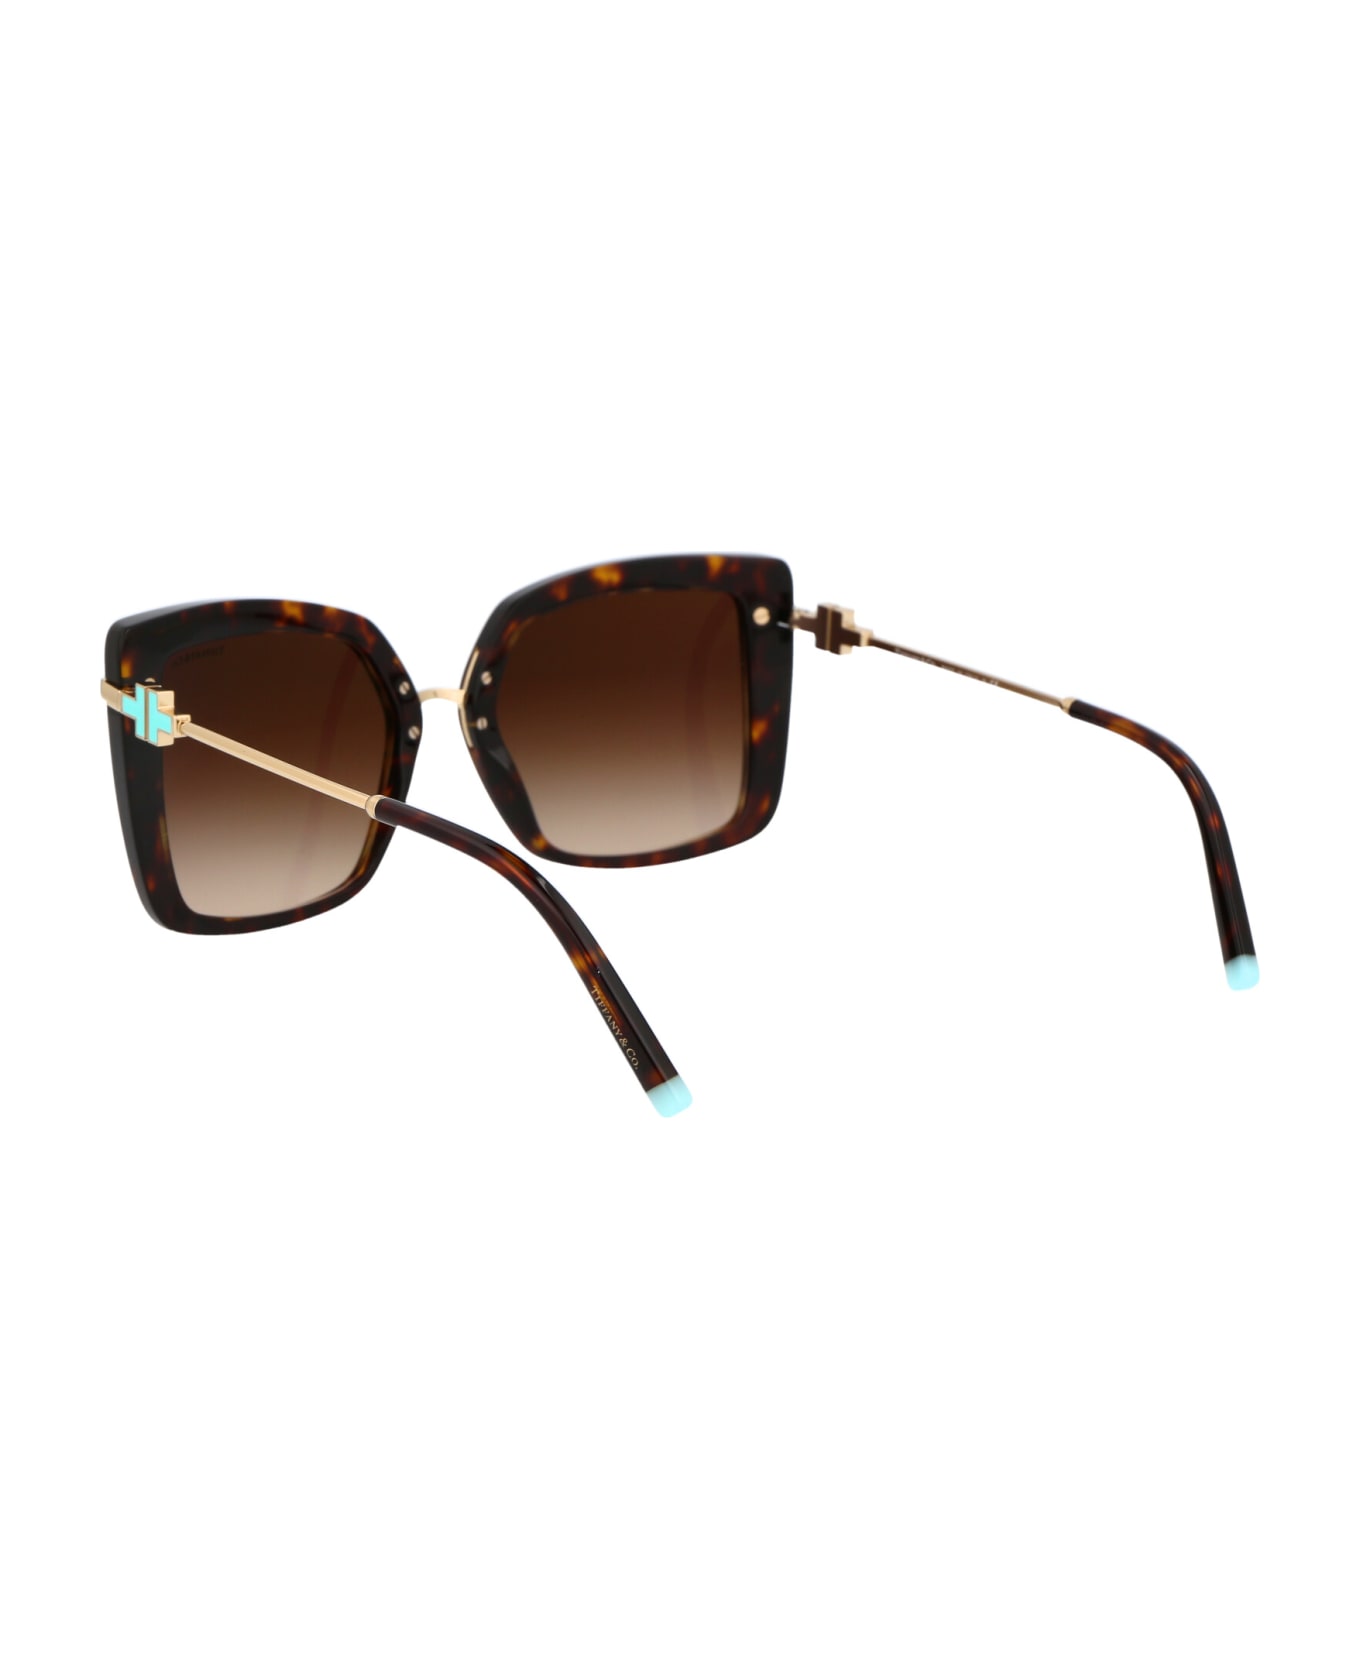 Tiffany & Co. 0tf4185 Sunglasses - 80153B Havana